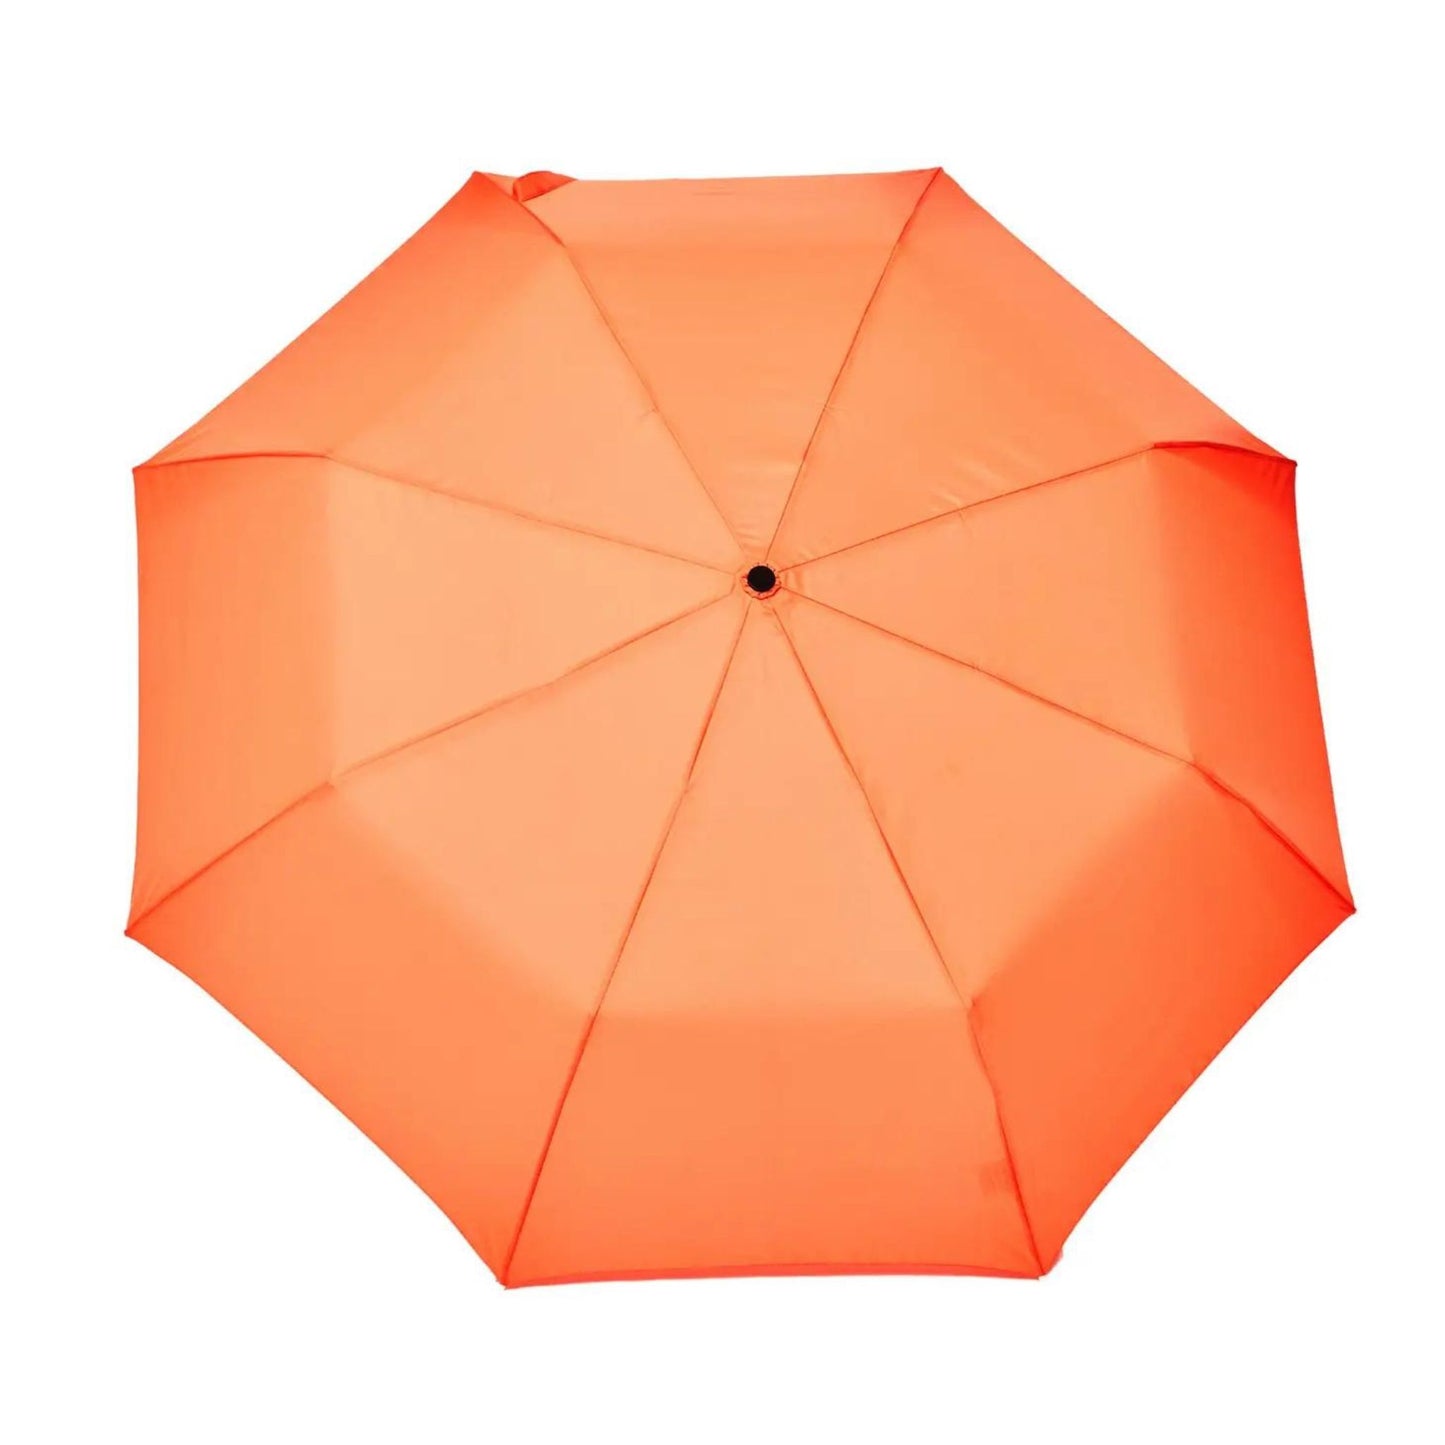 Duckhead Umbrella